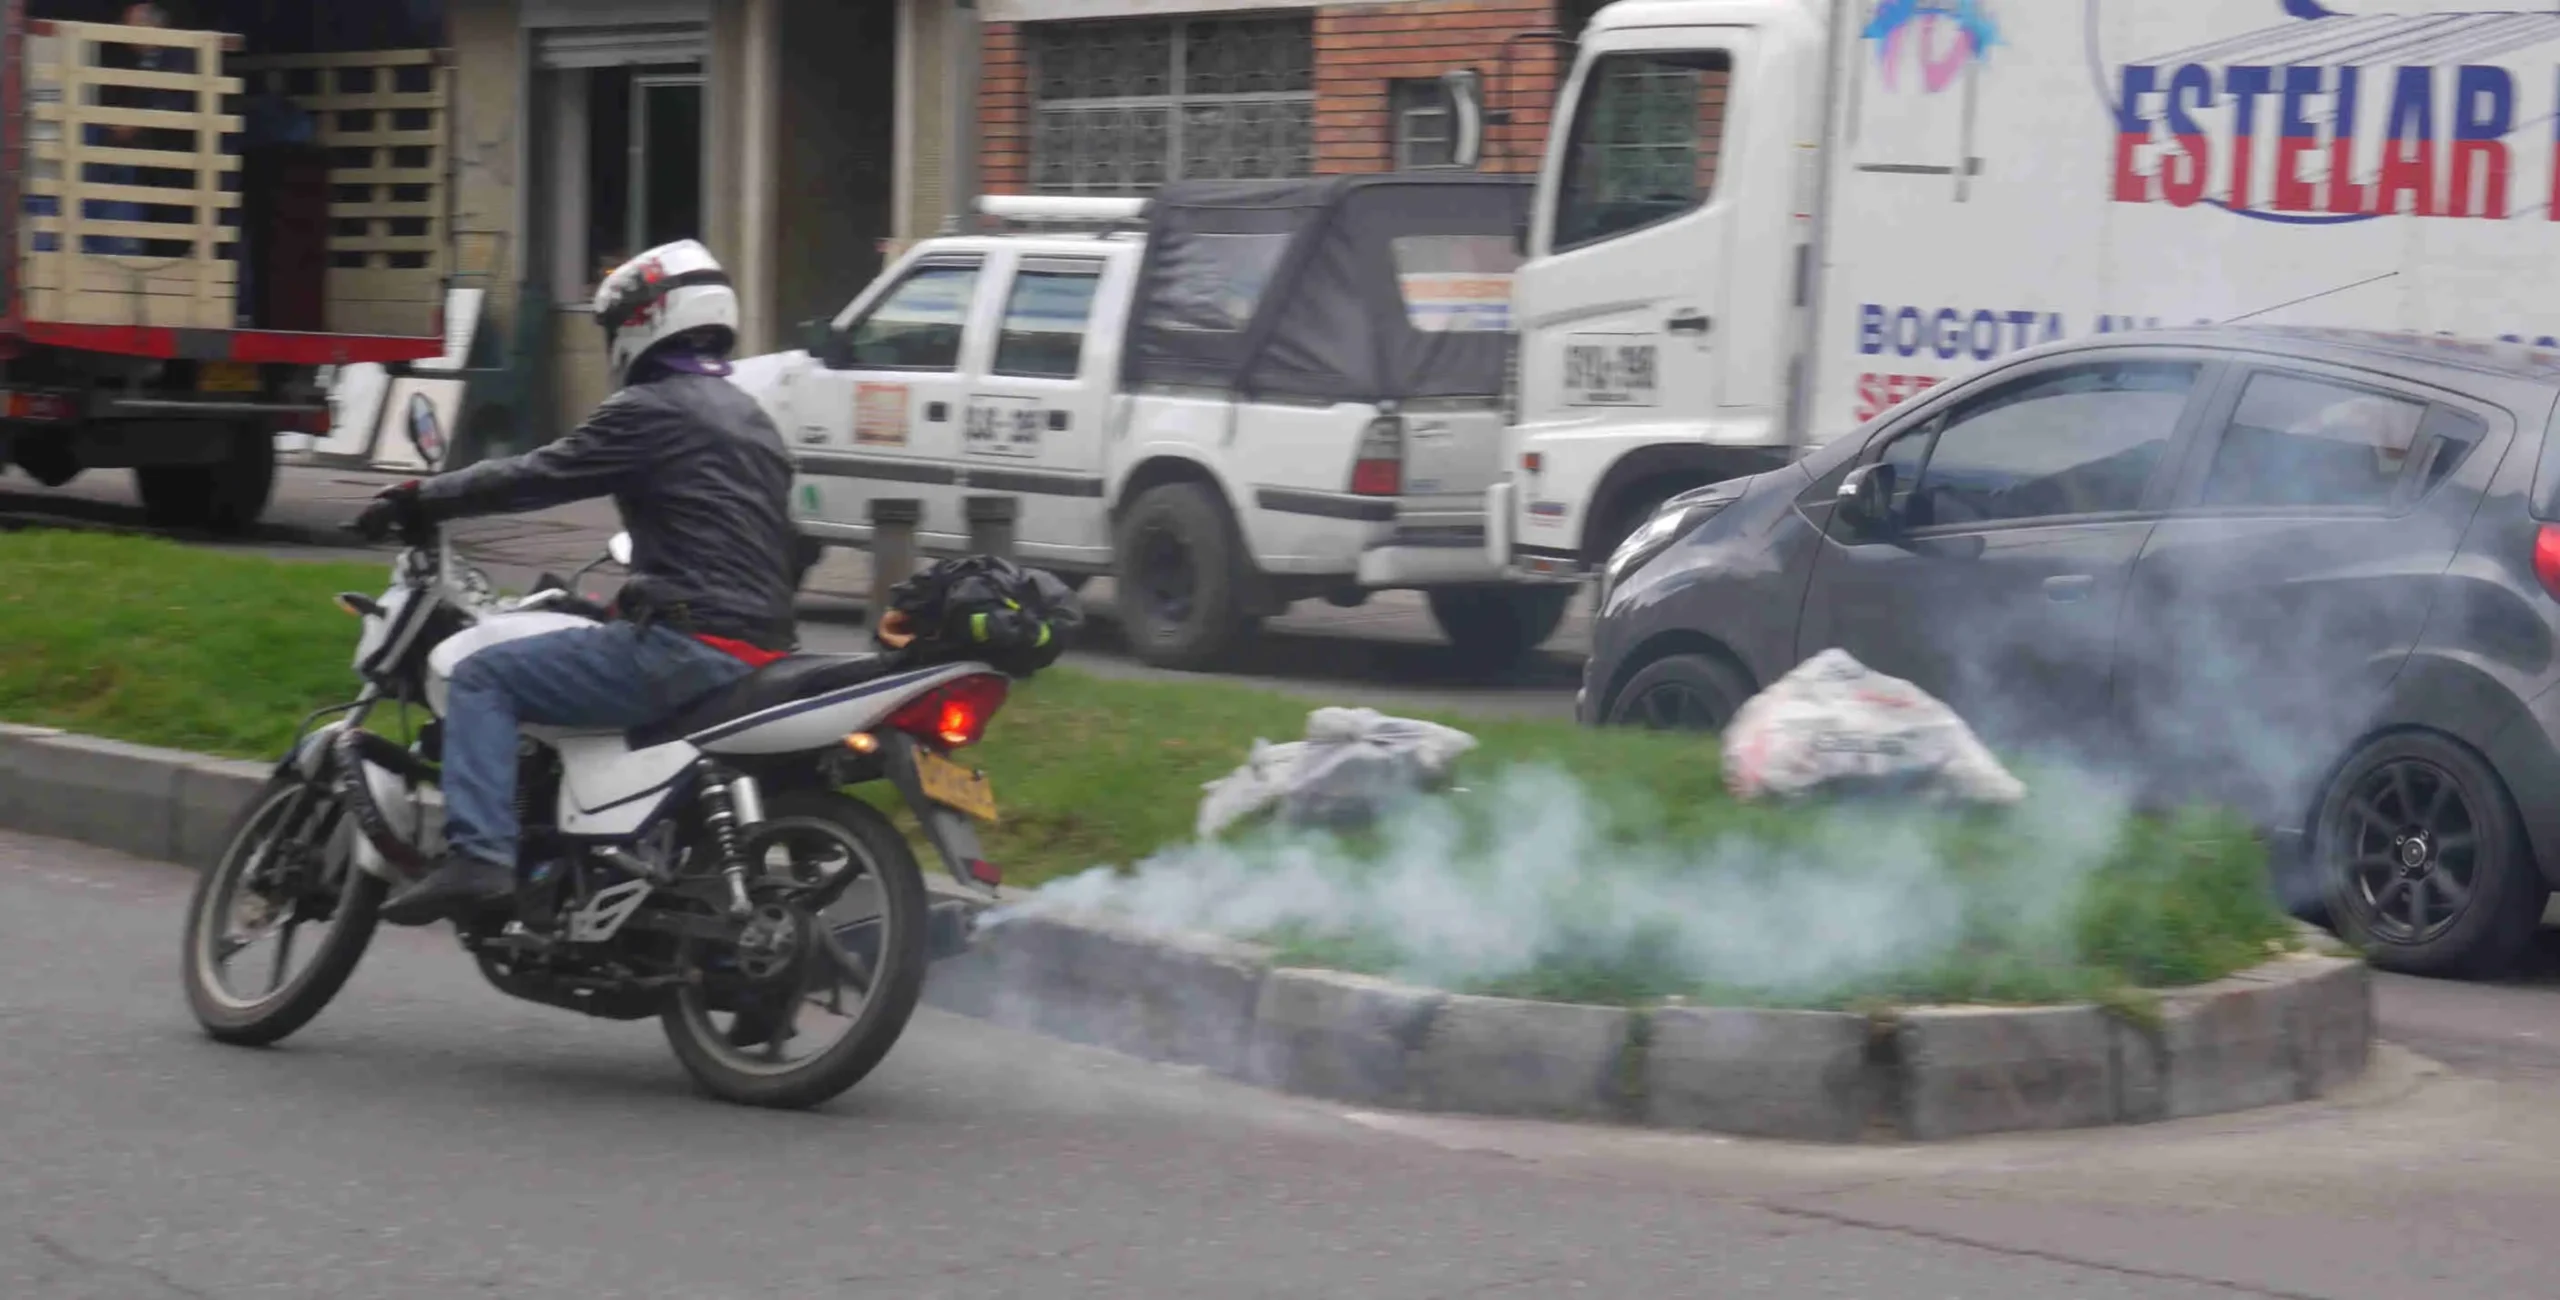 contaminacion de motos - Qué tipo de contaminación causan las motos